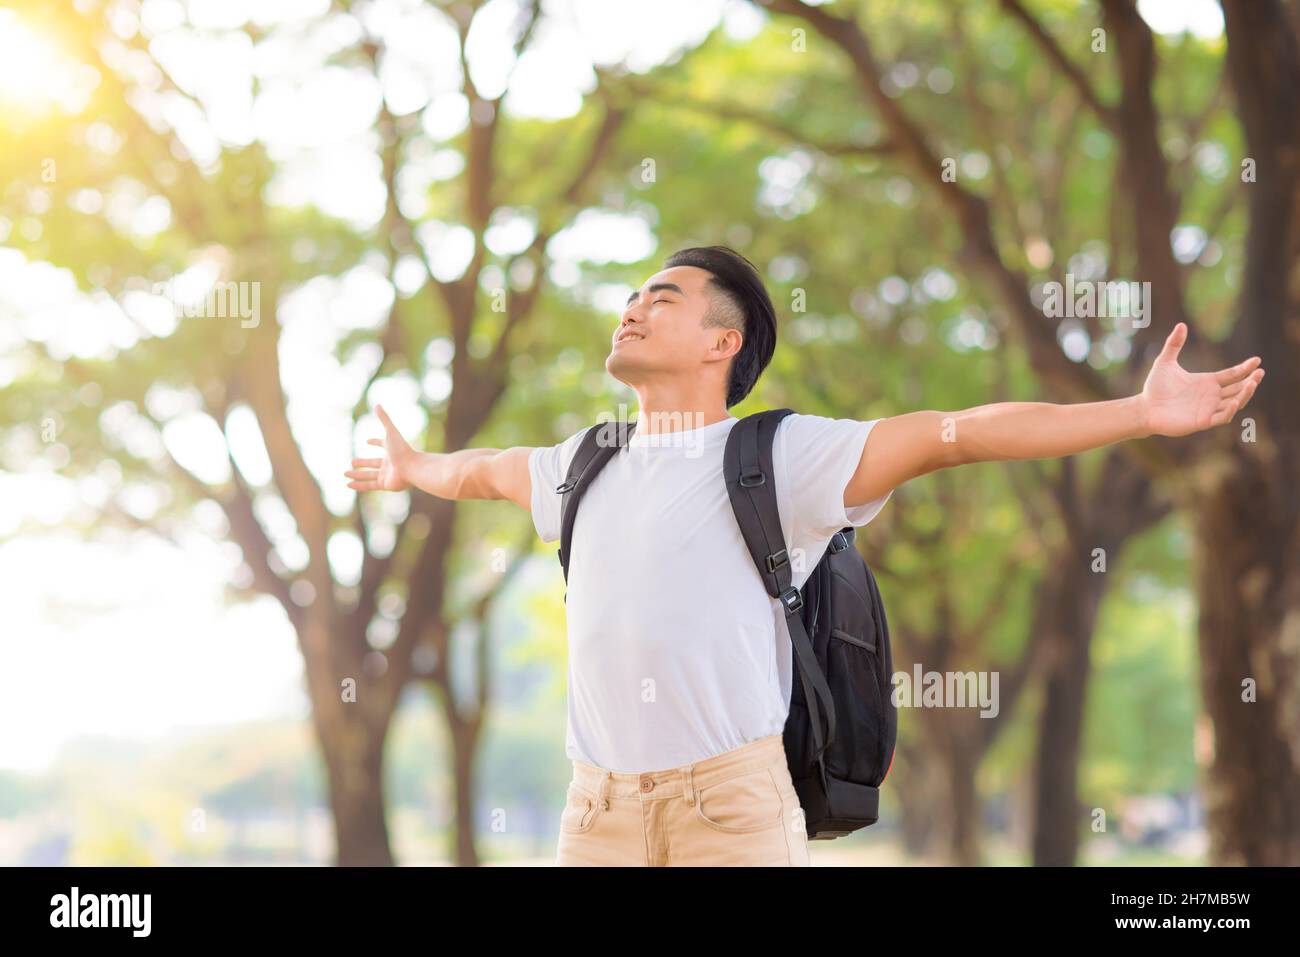 Entspannter junger Mann, der tief frische Luft in einem Wald mit grünen Bäumen atmet Stockfoto